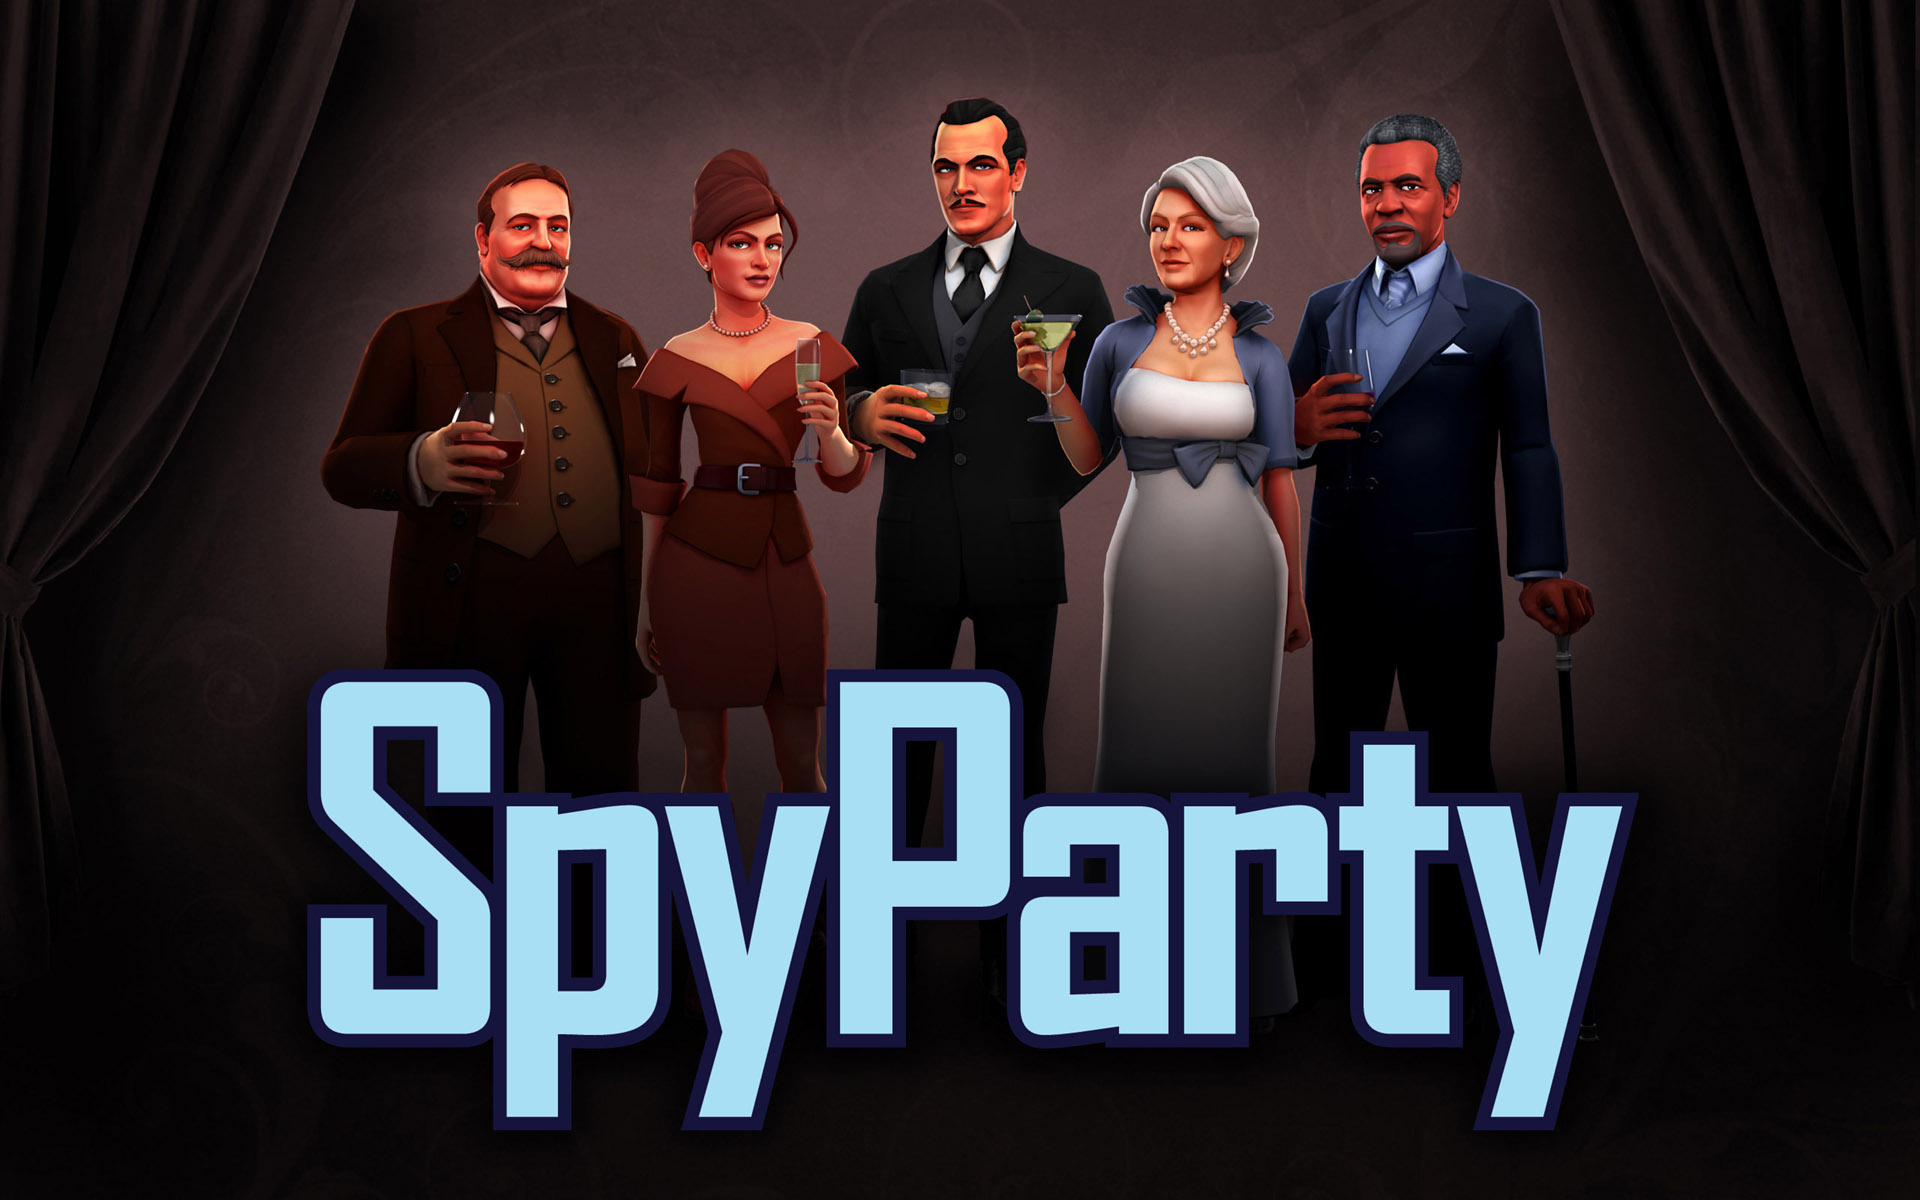 Spy party стим фото 24